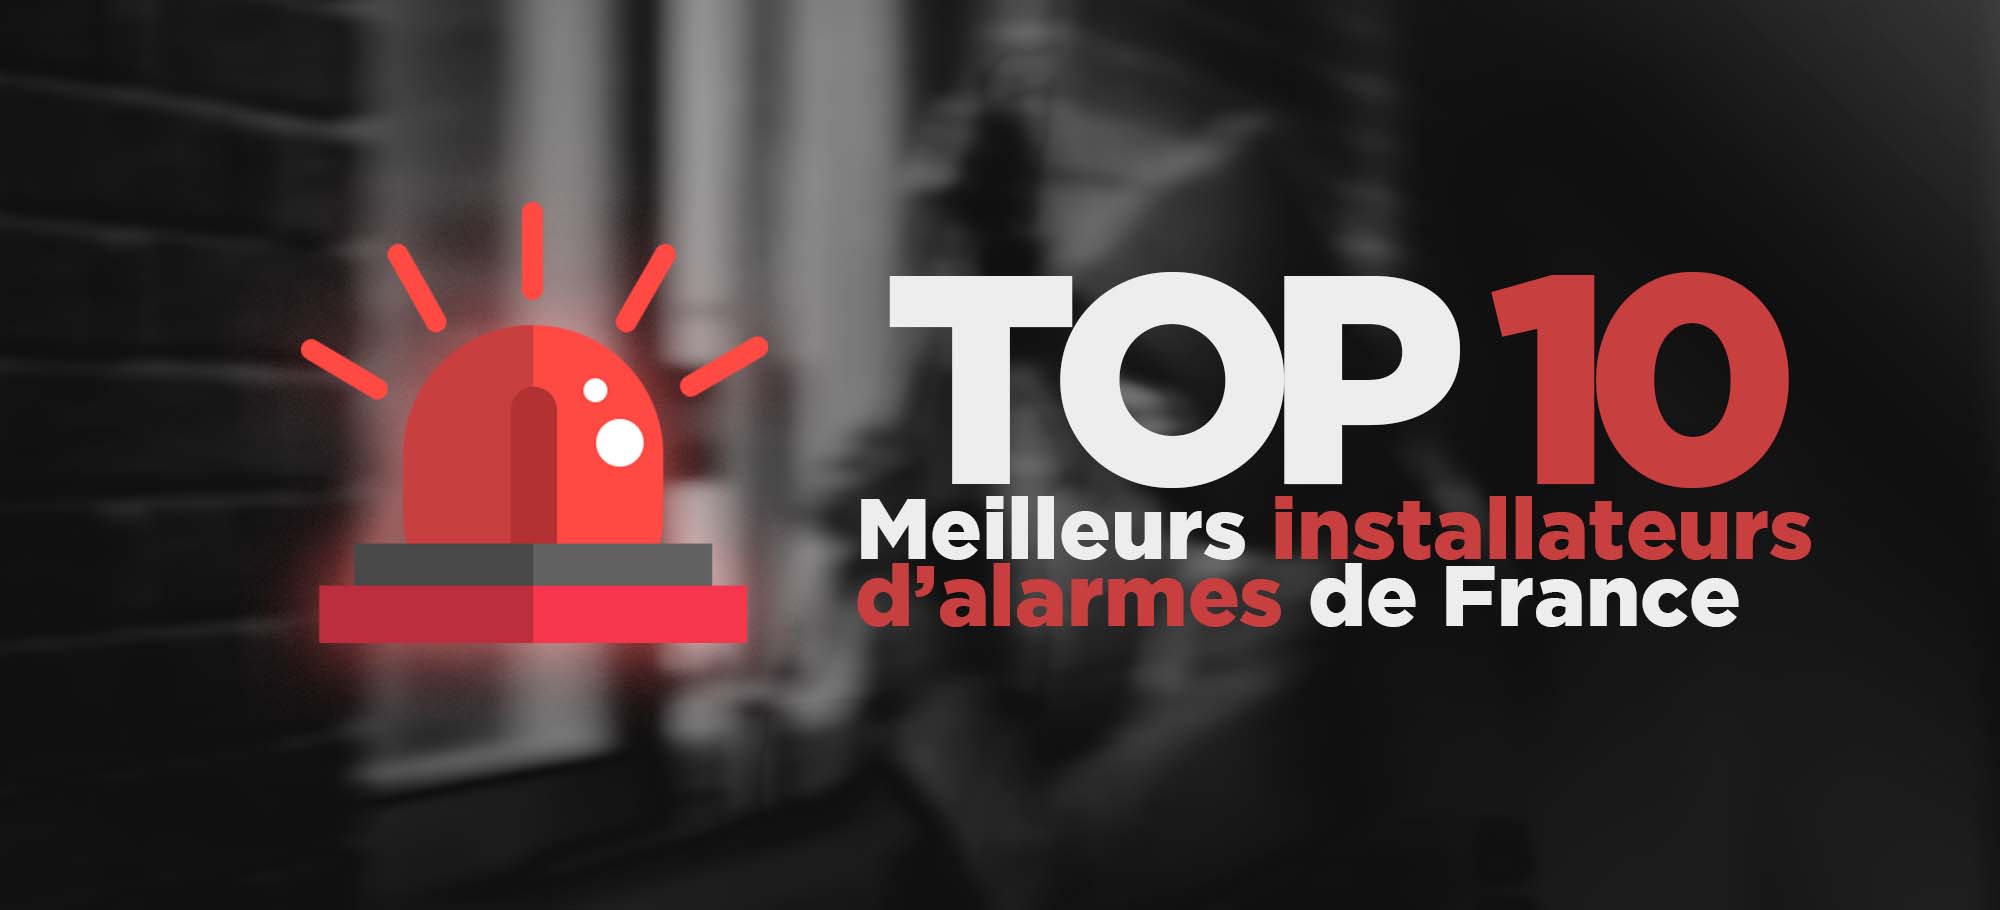 You are currently viewing Top 10 des meilleurs installateurs d’alarmes de France